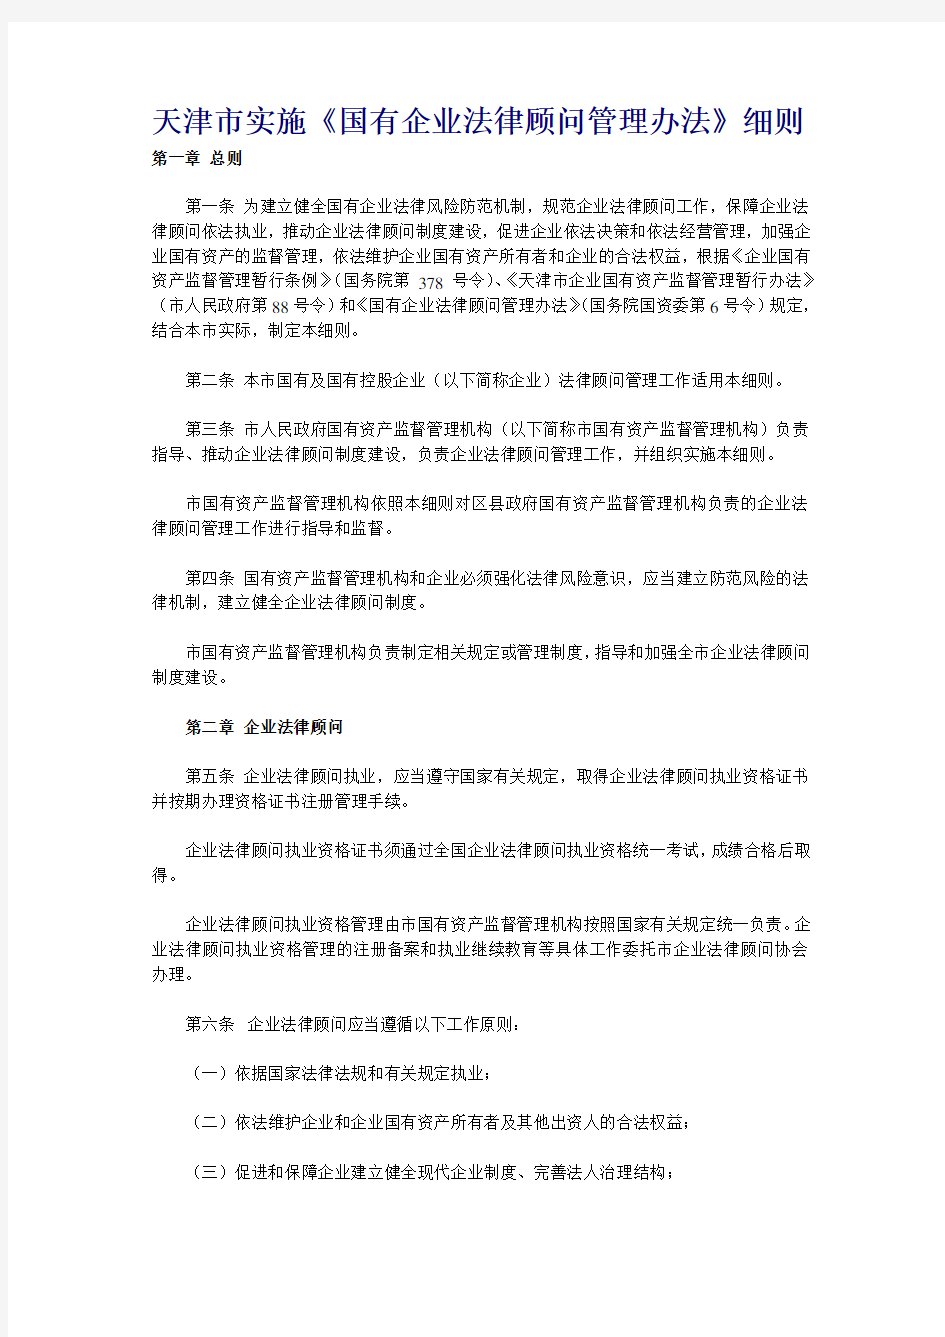 天津市实施企业法律顾问管理办法实施细则